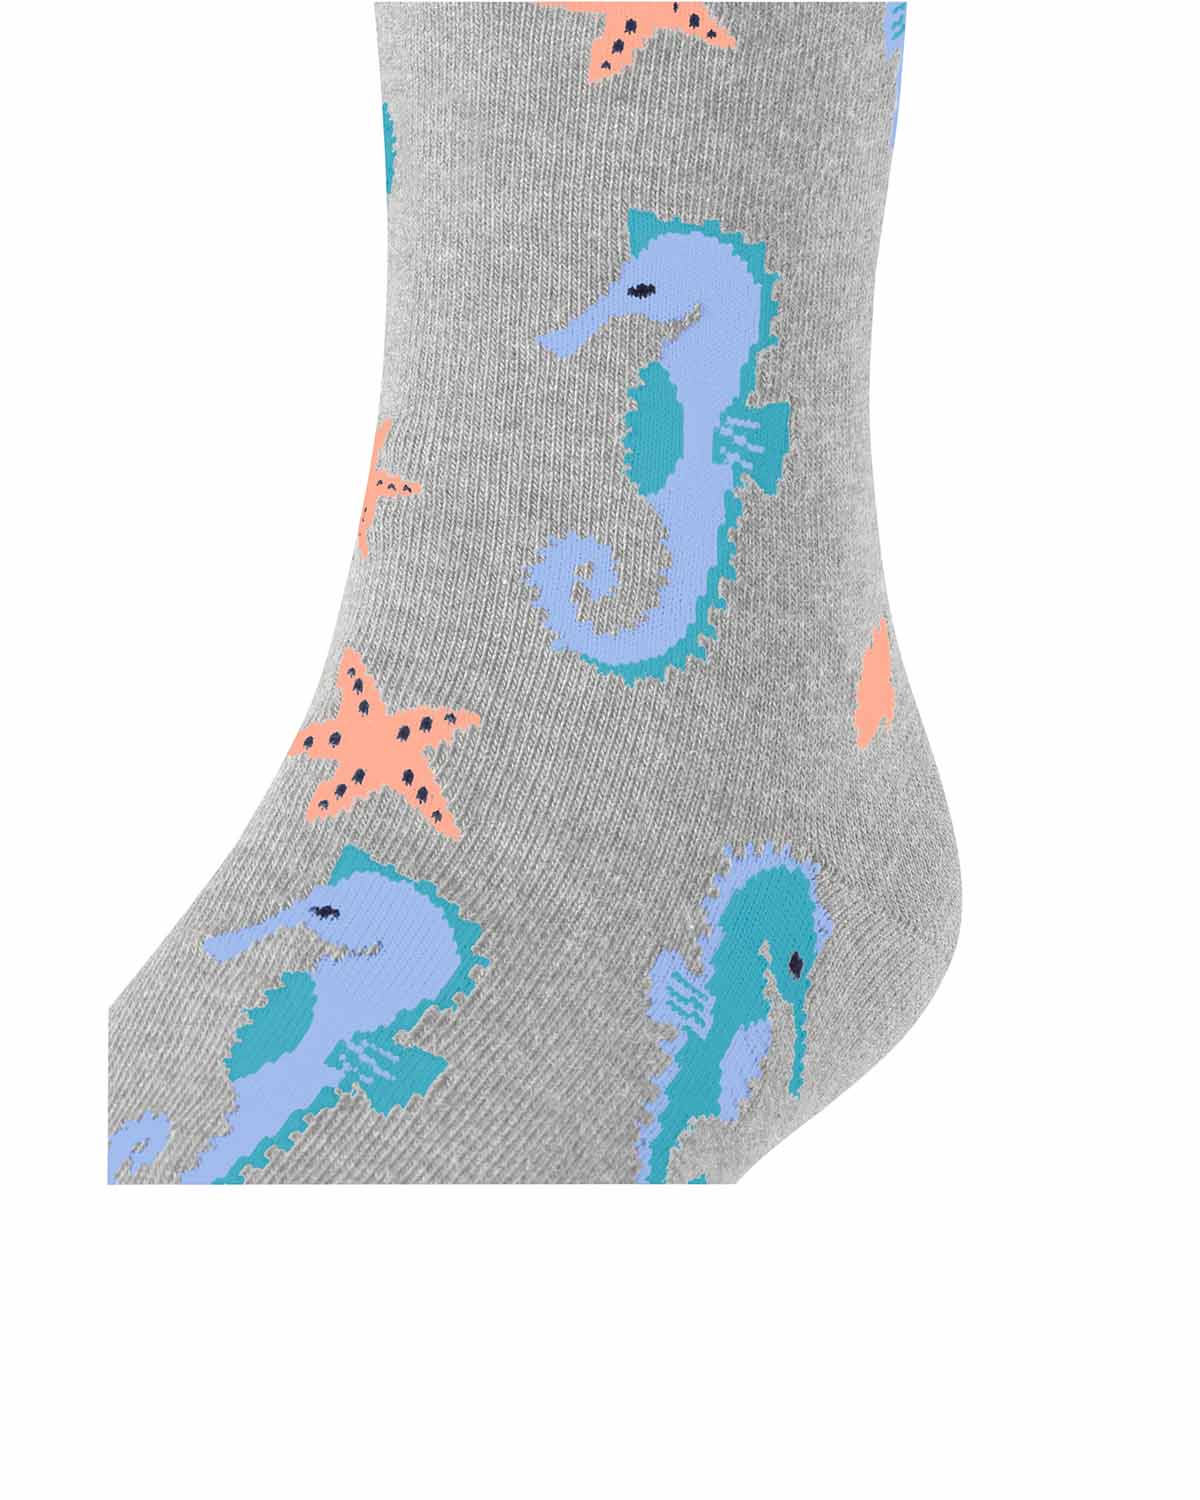 Falke Socken Lovely Seahorses